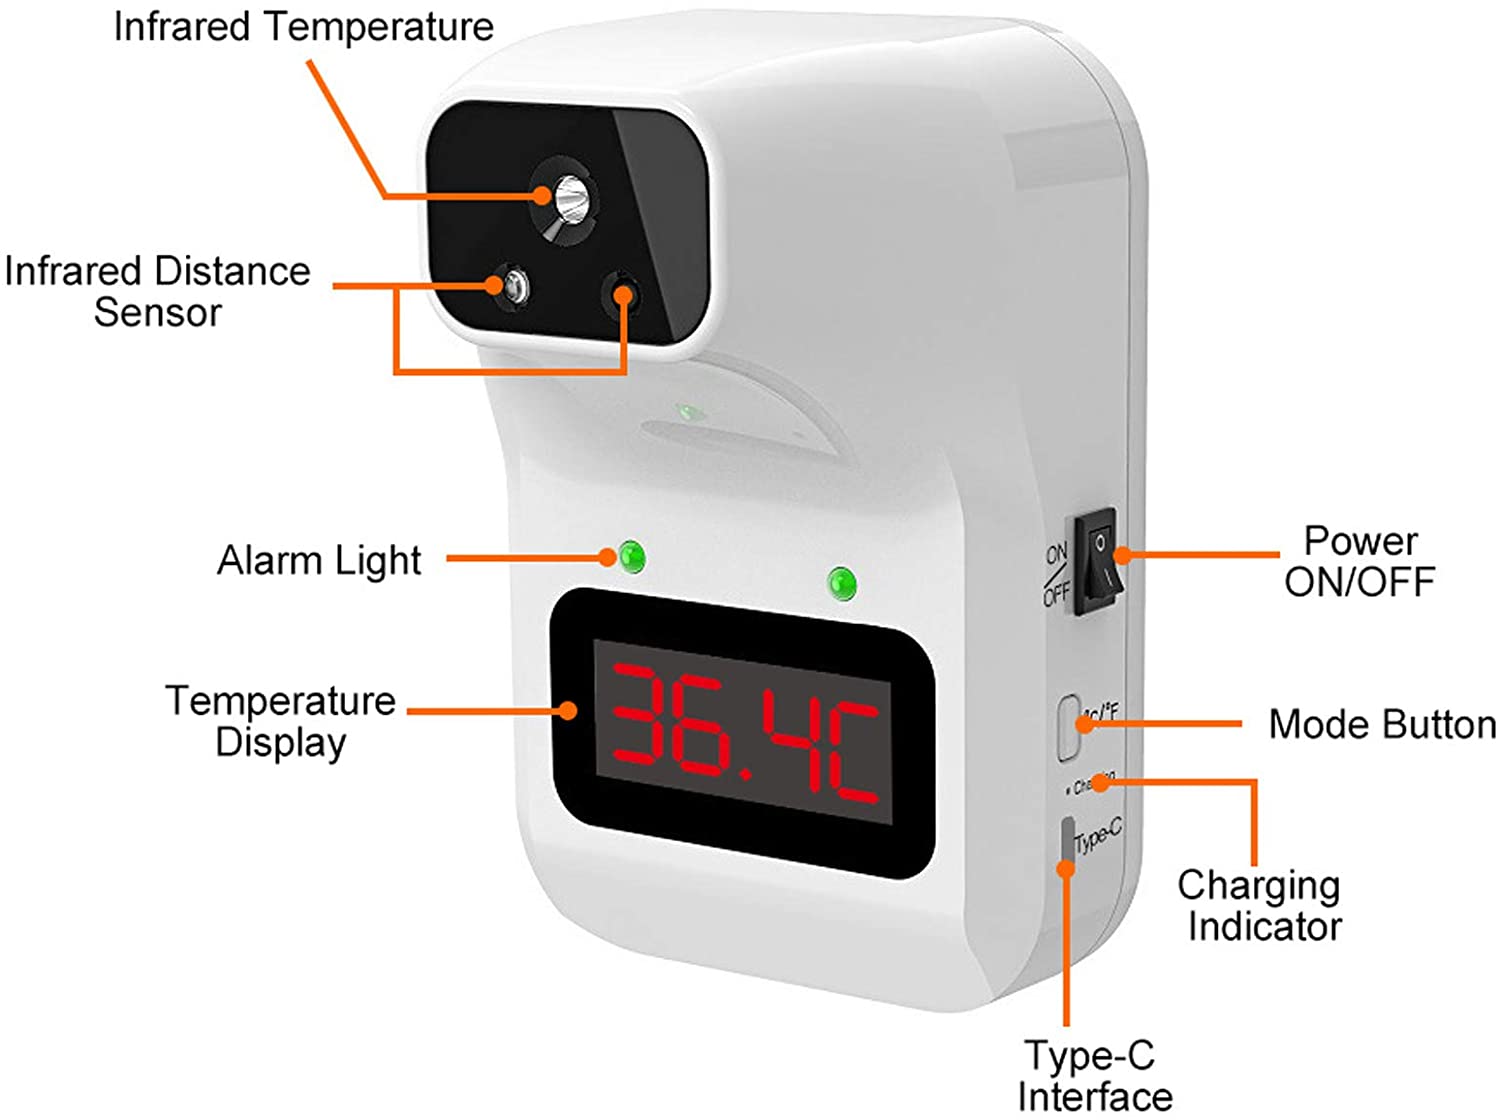 جهاز قايس درجة الحرارة عن بعد مع حامل ارضي يعمل بالاشعة تحت البنفسجية بدون لمس مع قاري بالصوت